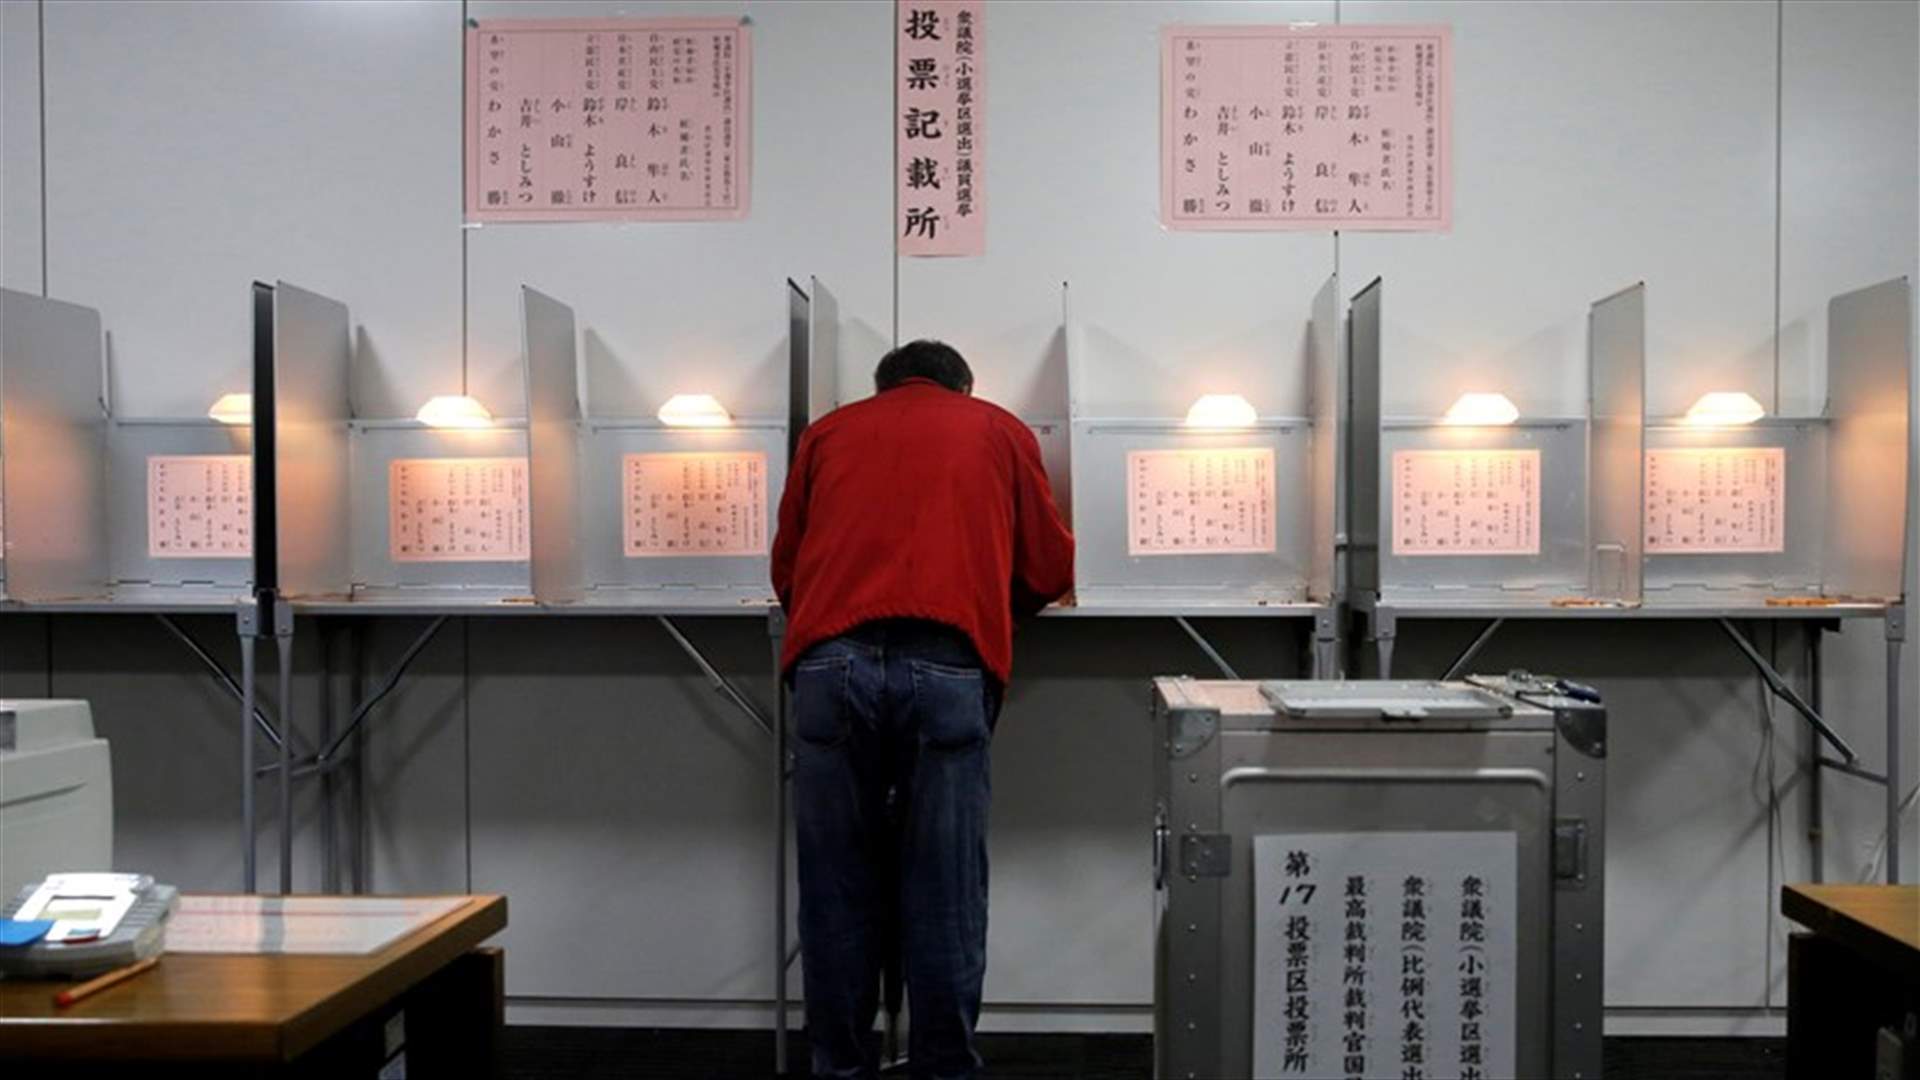 مراكز الاقتراع فتحت أبوابها للانتخابات التشريعية في اليابان